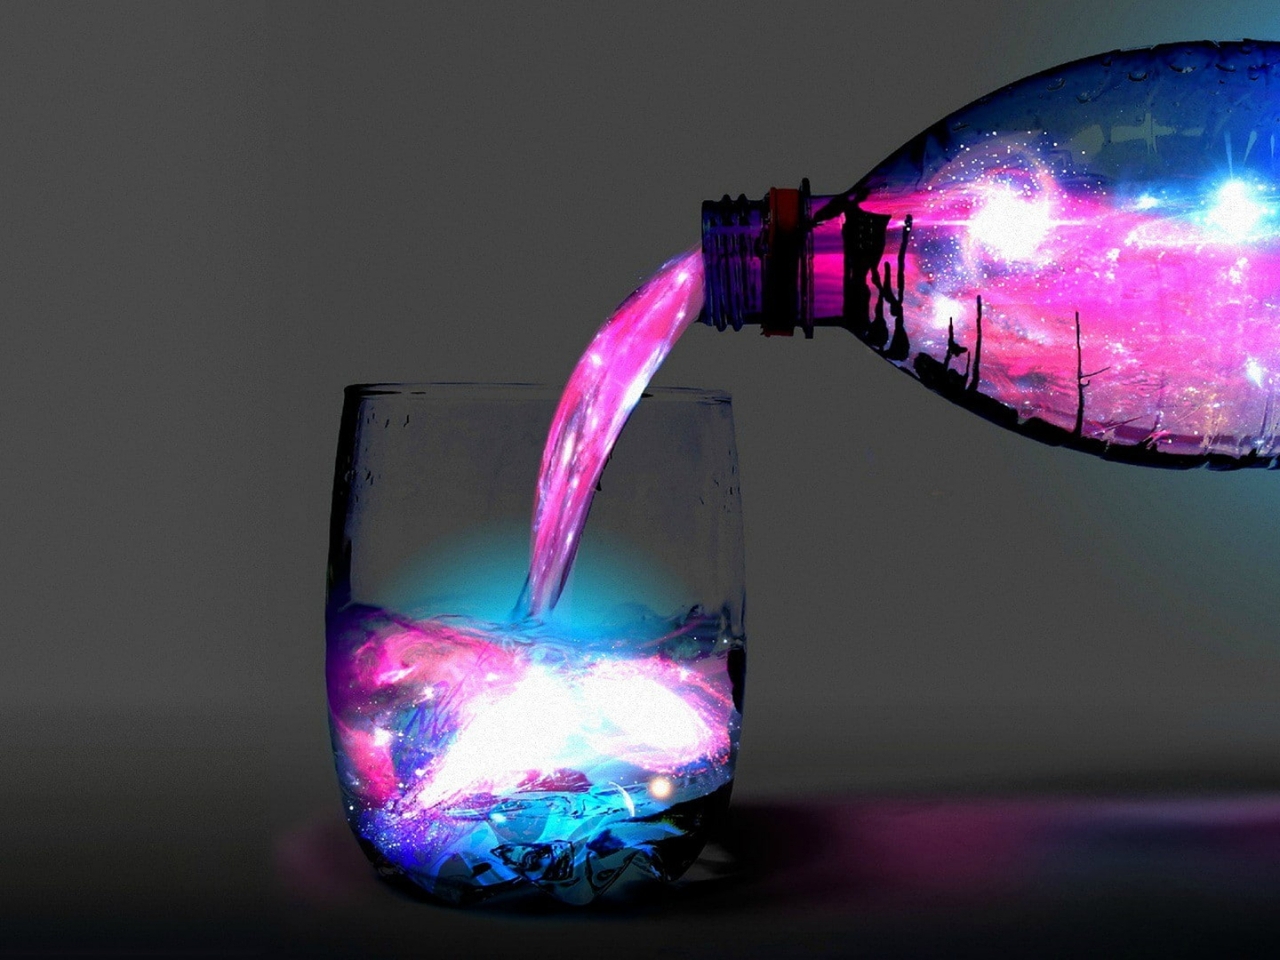 Картинка: Бутылка, стакан, вода, космическая